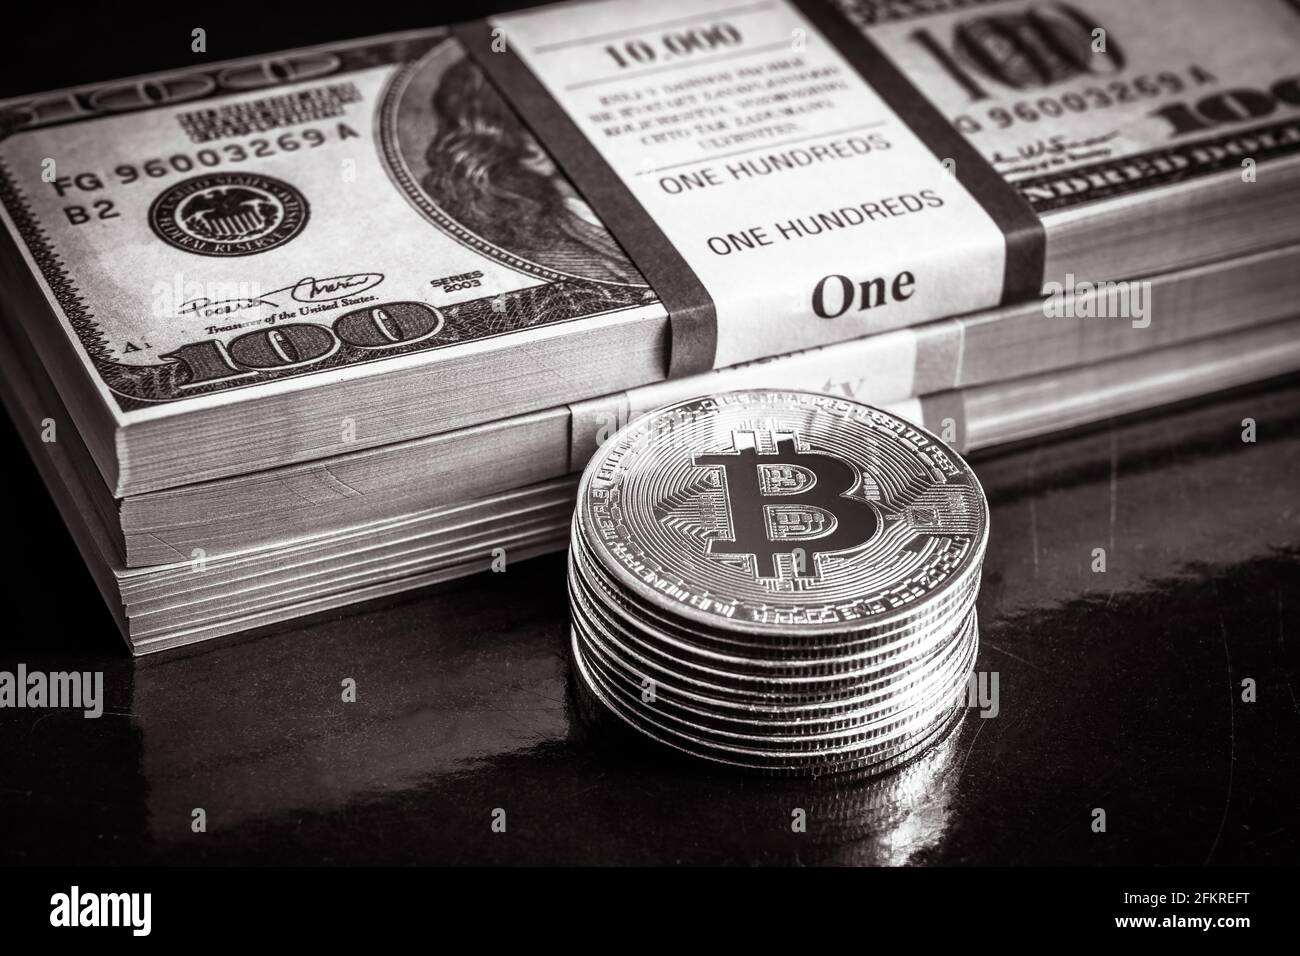 Bitcoin avec des piles d'argent en dollars, la crypto virtuelle numérique bitcoin en monnaie et pile d'argent en papier. Billets et pièces de monnaie en dollars AMÉRICAINS (btc). Concept de bitcoin Banque D'Images